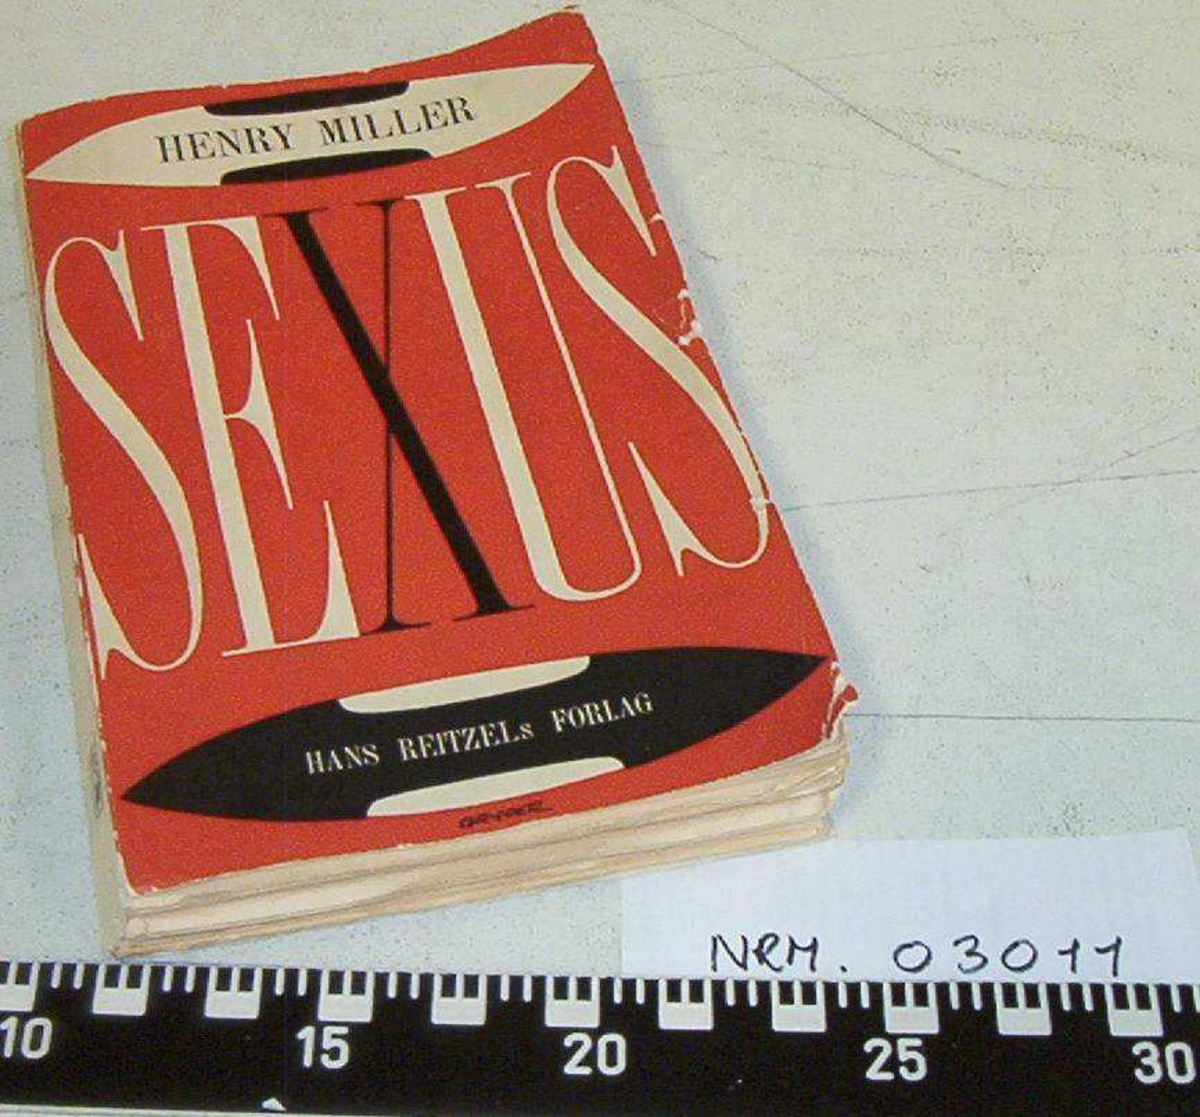 Henry Miller: Sexus. 4. bog.
Pornografisk litteratur utgitt av Hans Reitzels Forlag i København 1957
Boken er stemplet Trondheim Politikammer, påskrift Kriminalmuseet.